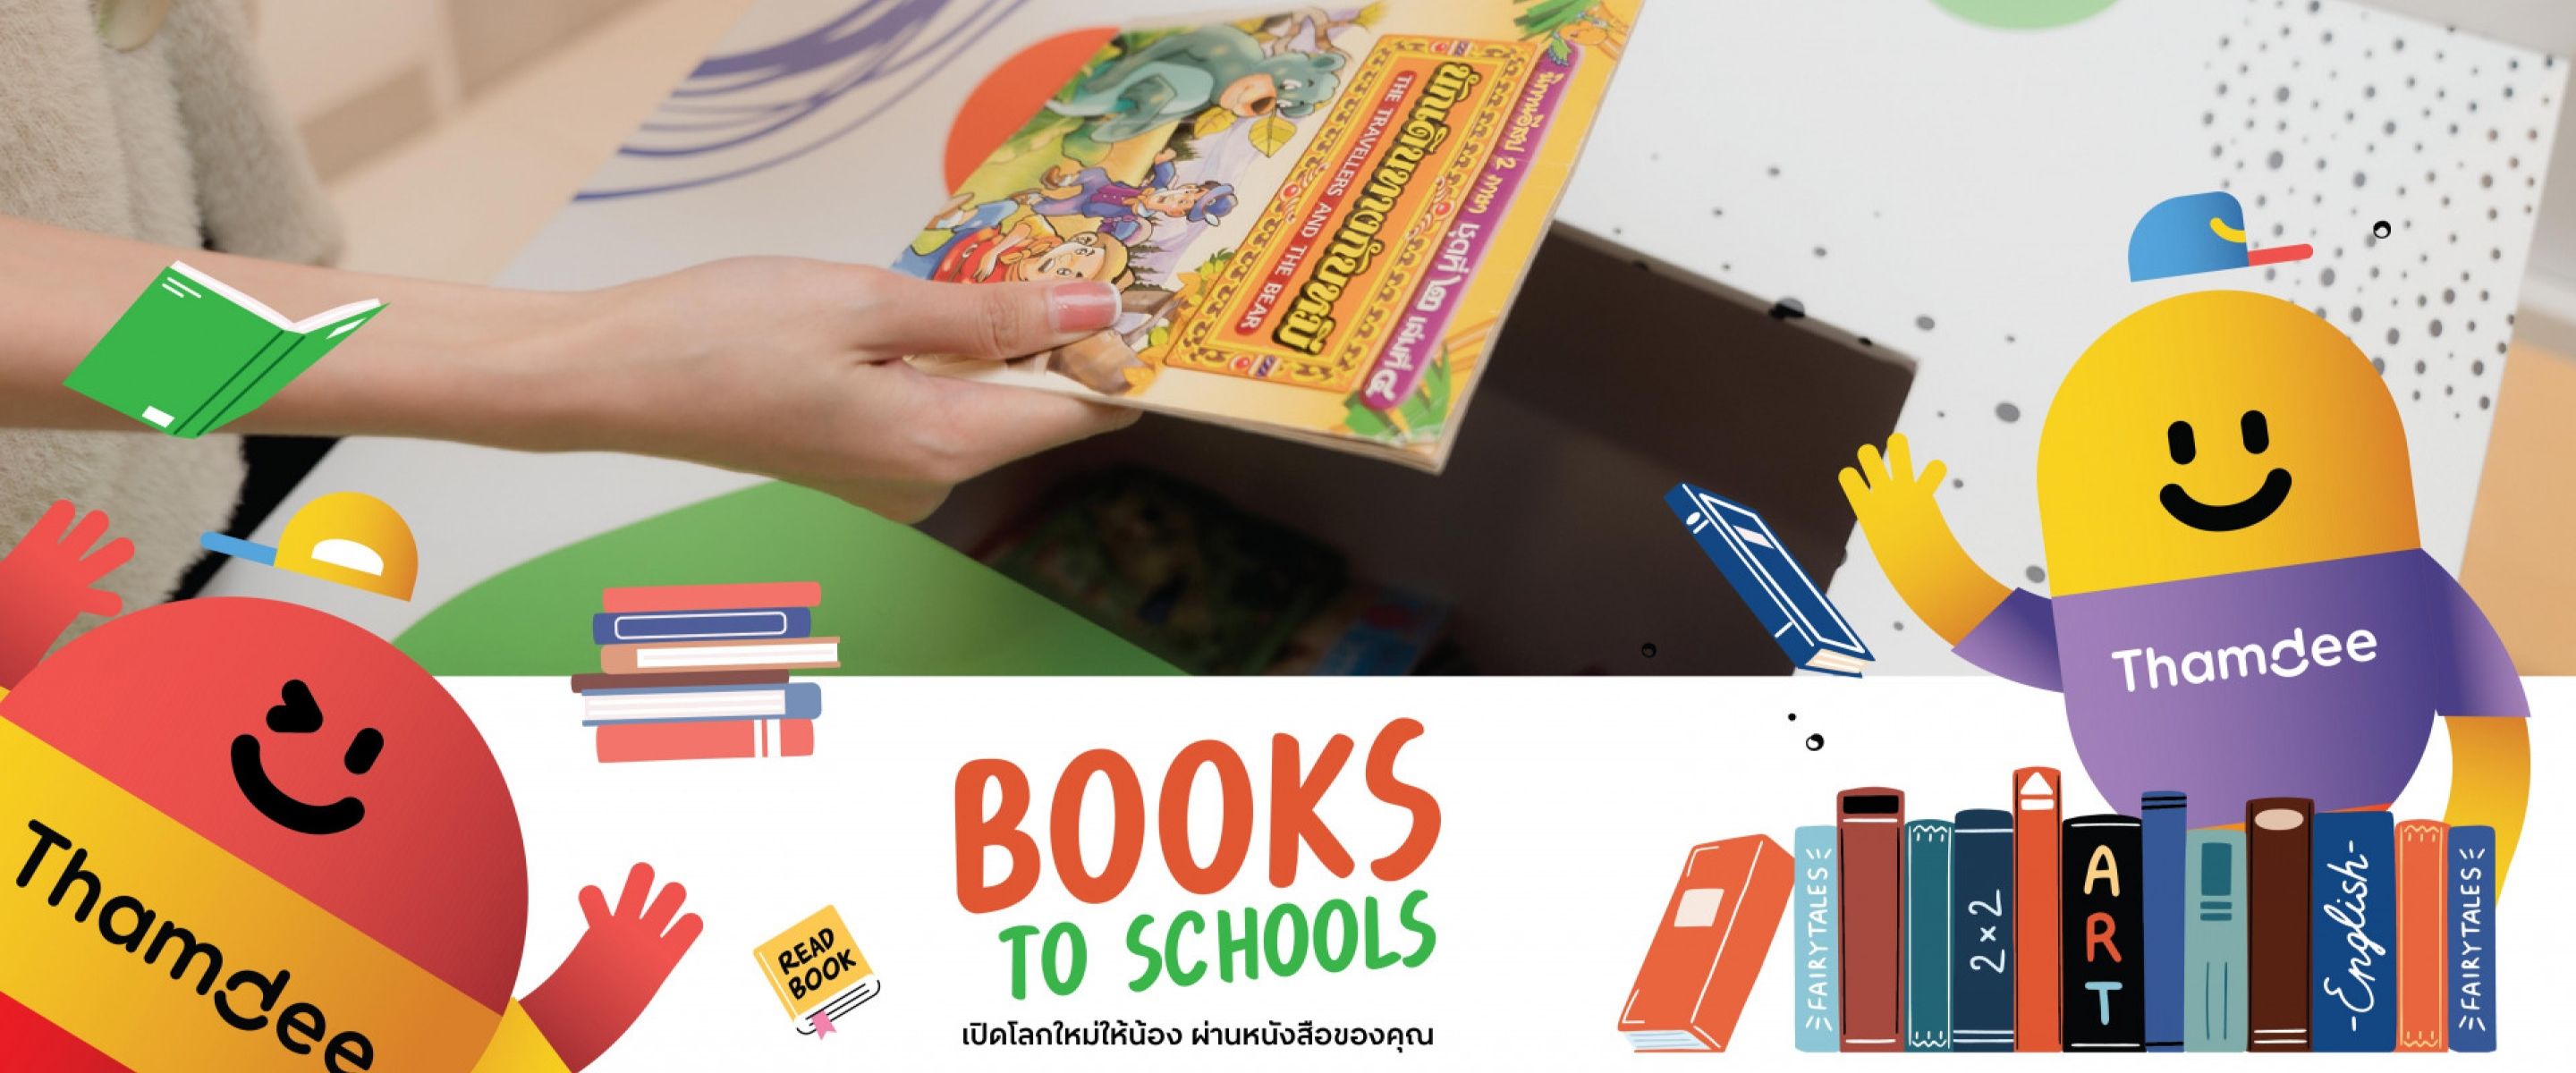 Books To Schools